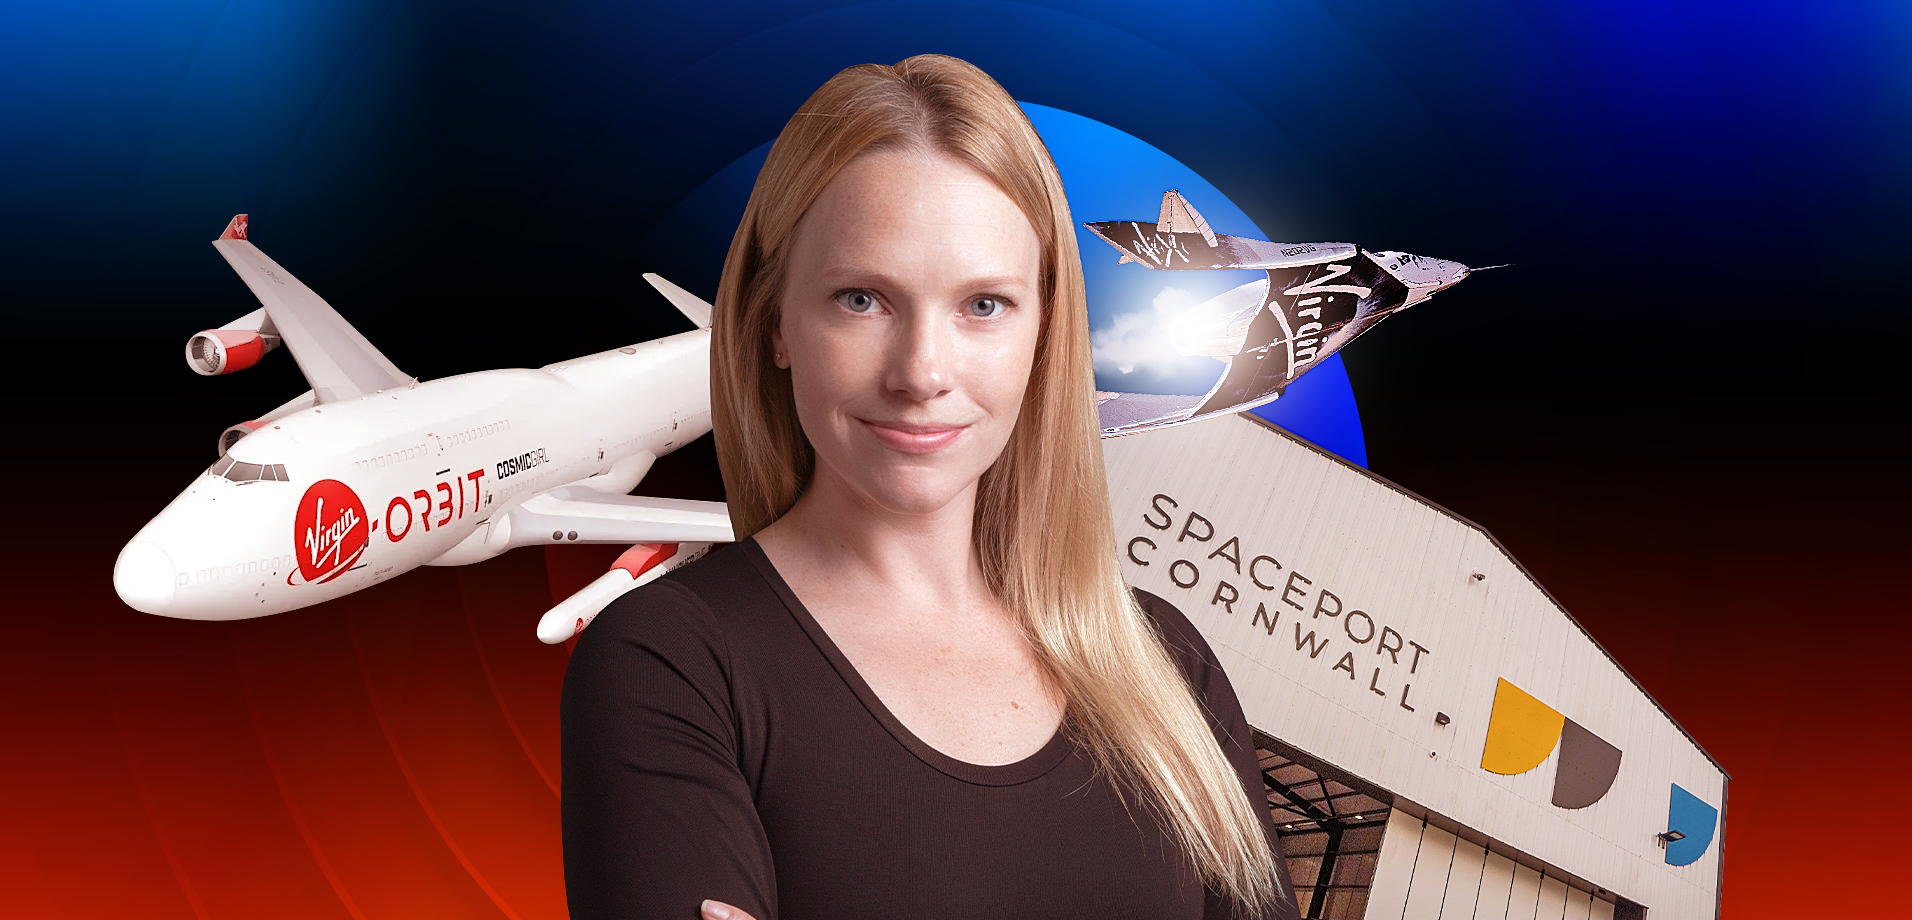 Spaceport Cornwall: People in Space – Melissa Thorpe